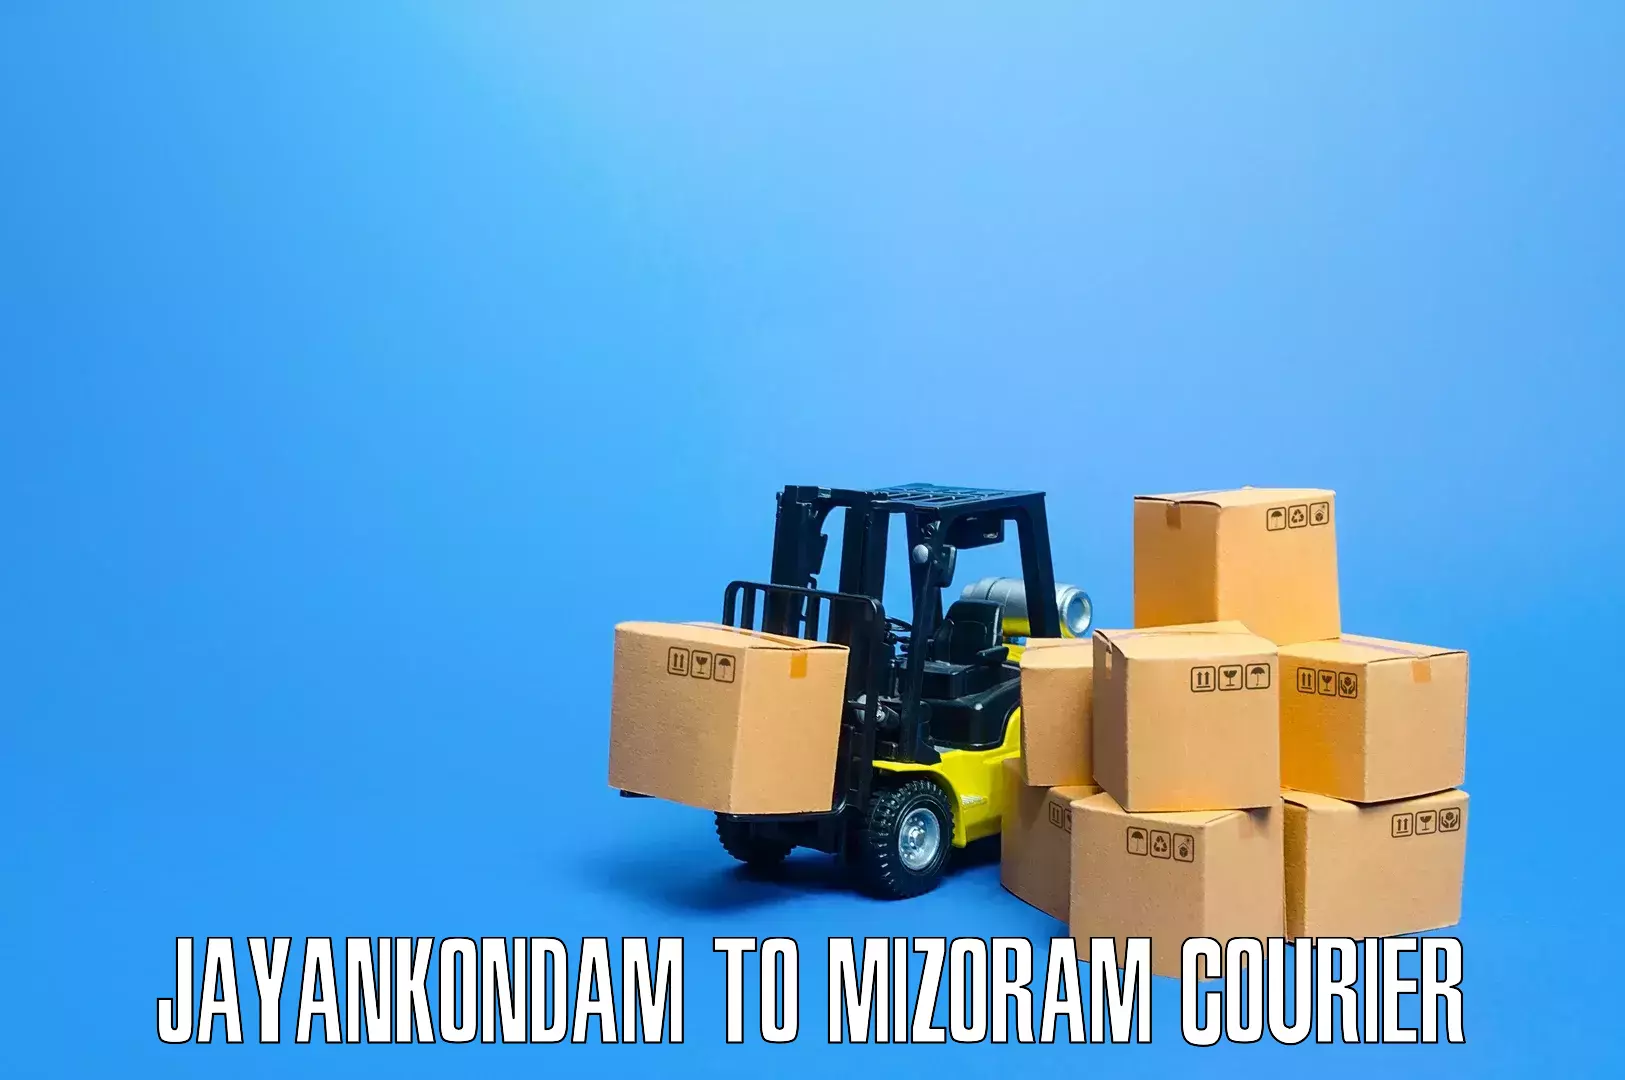 Quality household movers Jayankondam to NIT Aizawl